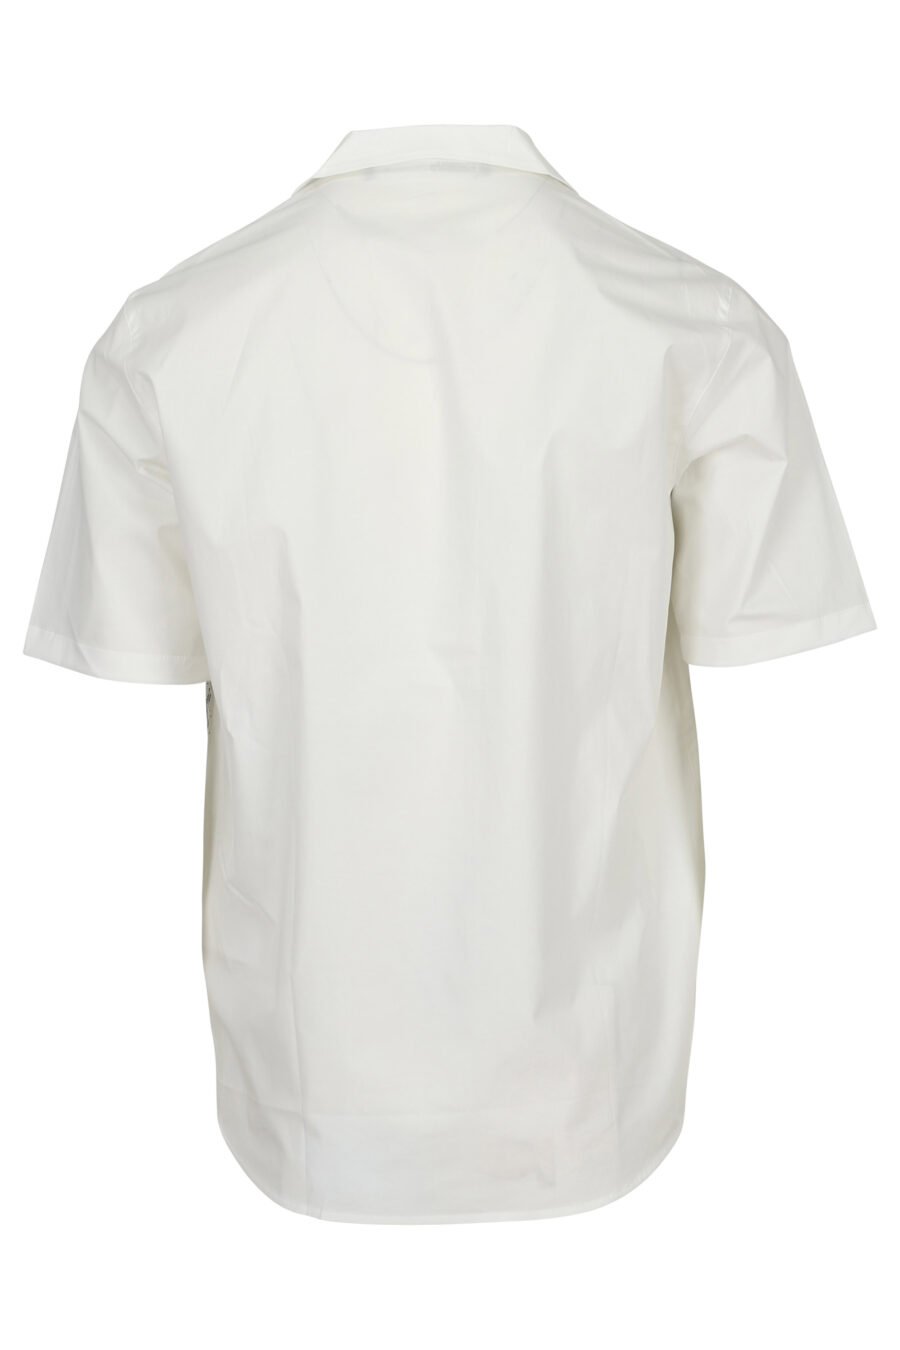 Camiseta blanca con maxilogo mancha vertical - 4062226917100 1